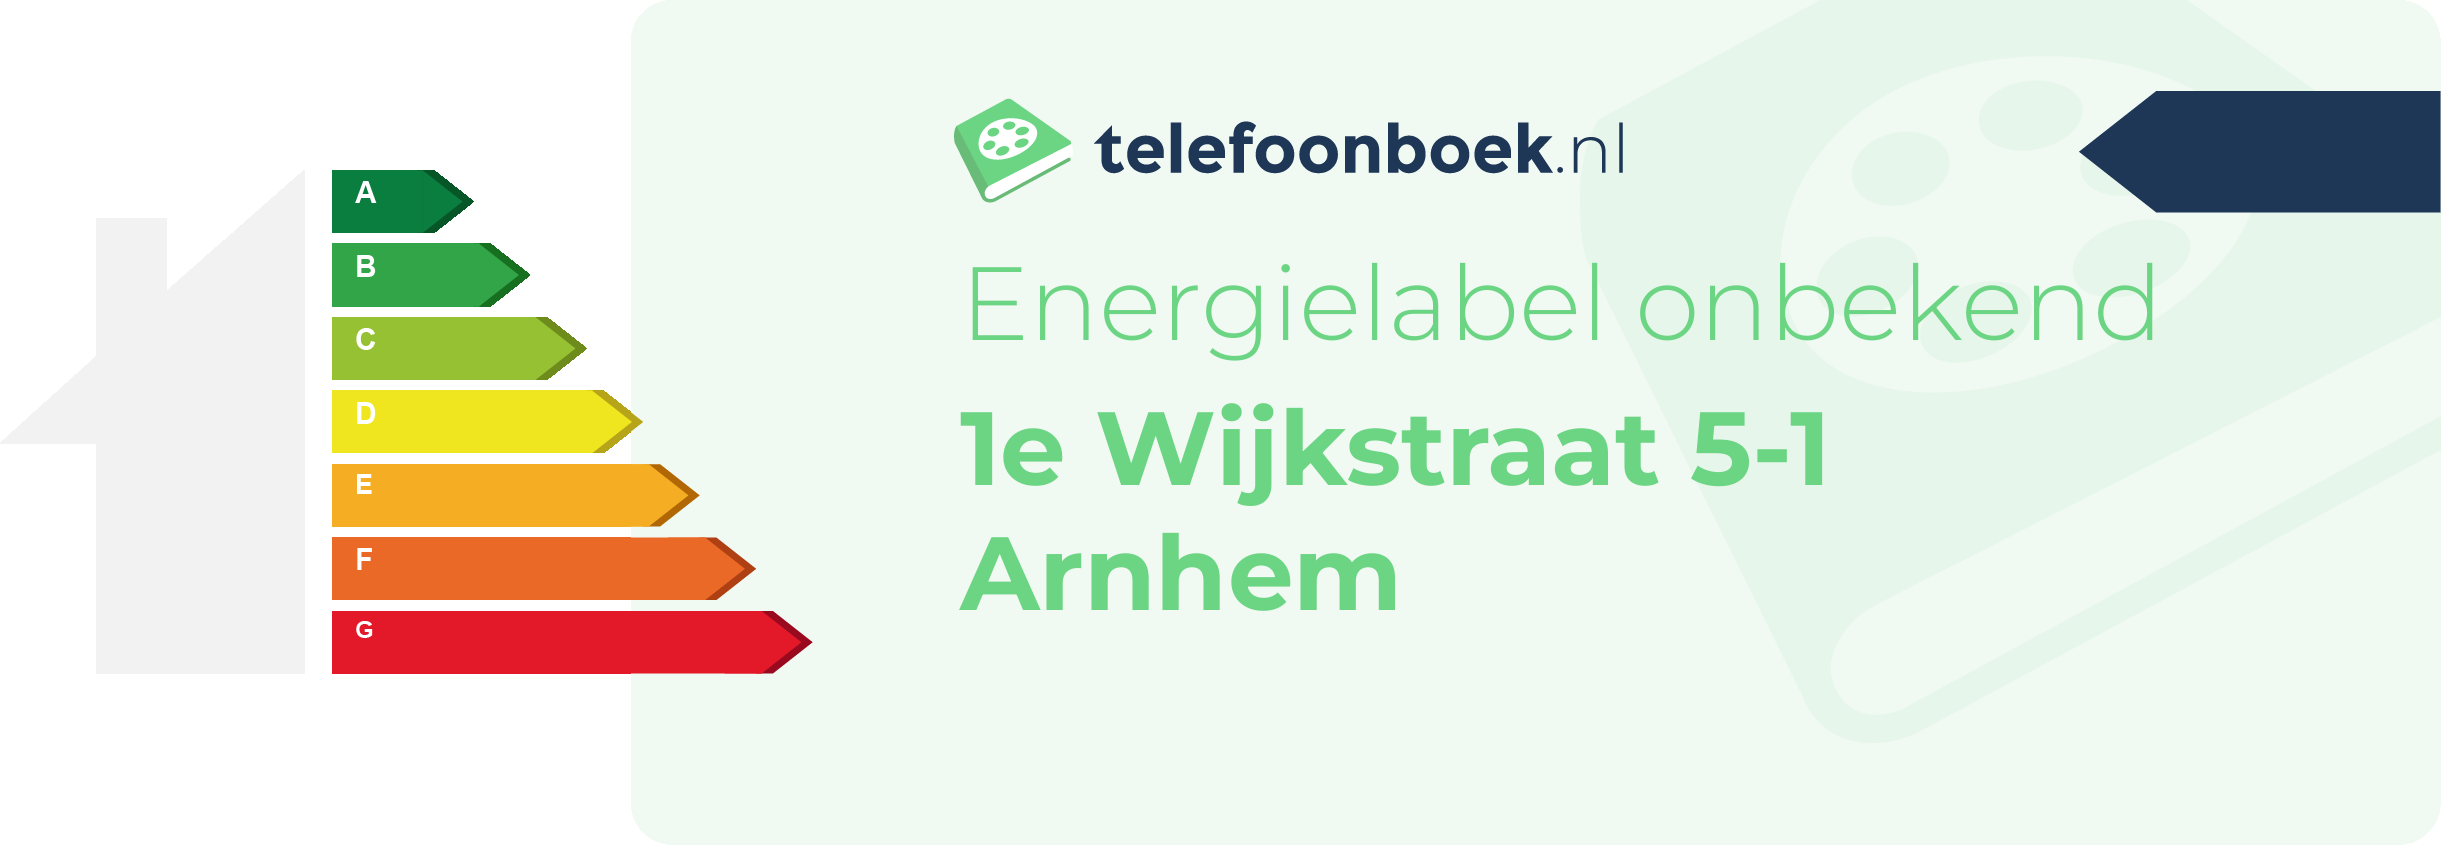 Energielabel 1e Wijkstraat 5-1 Arnhem